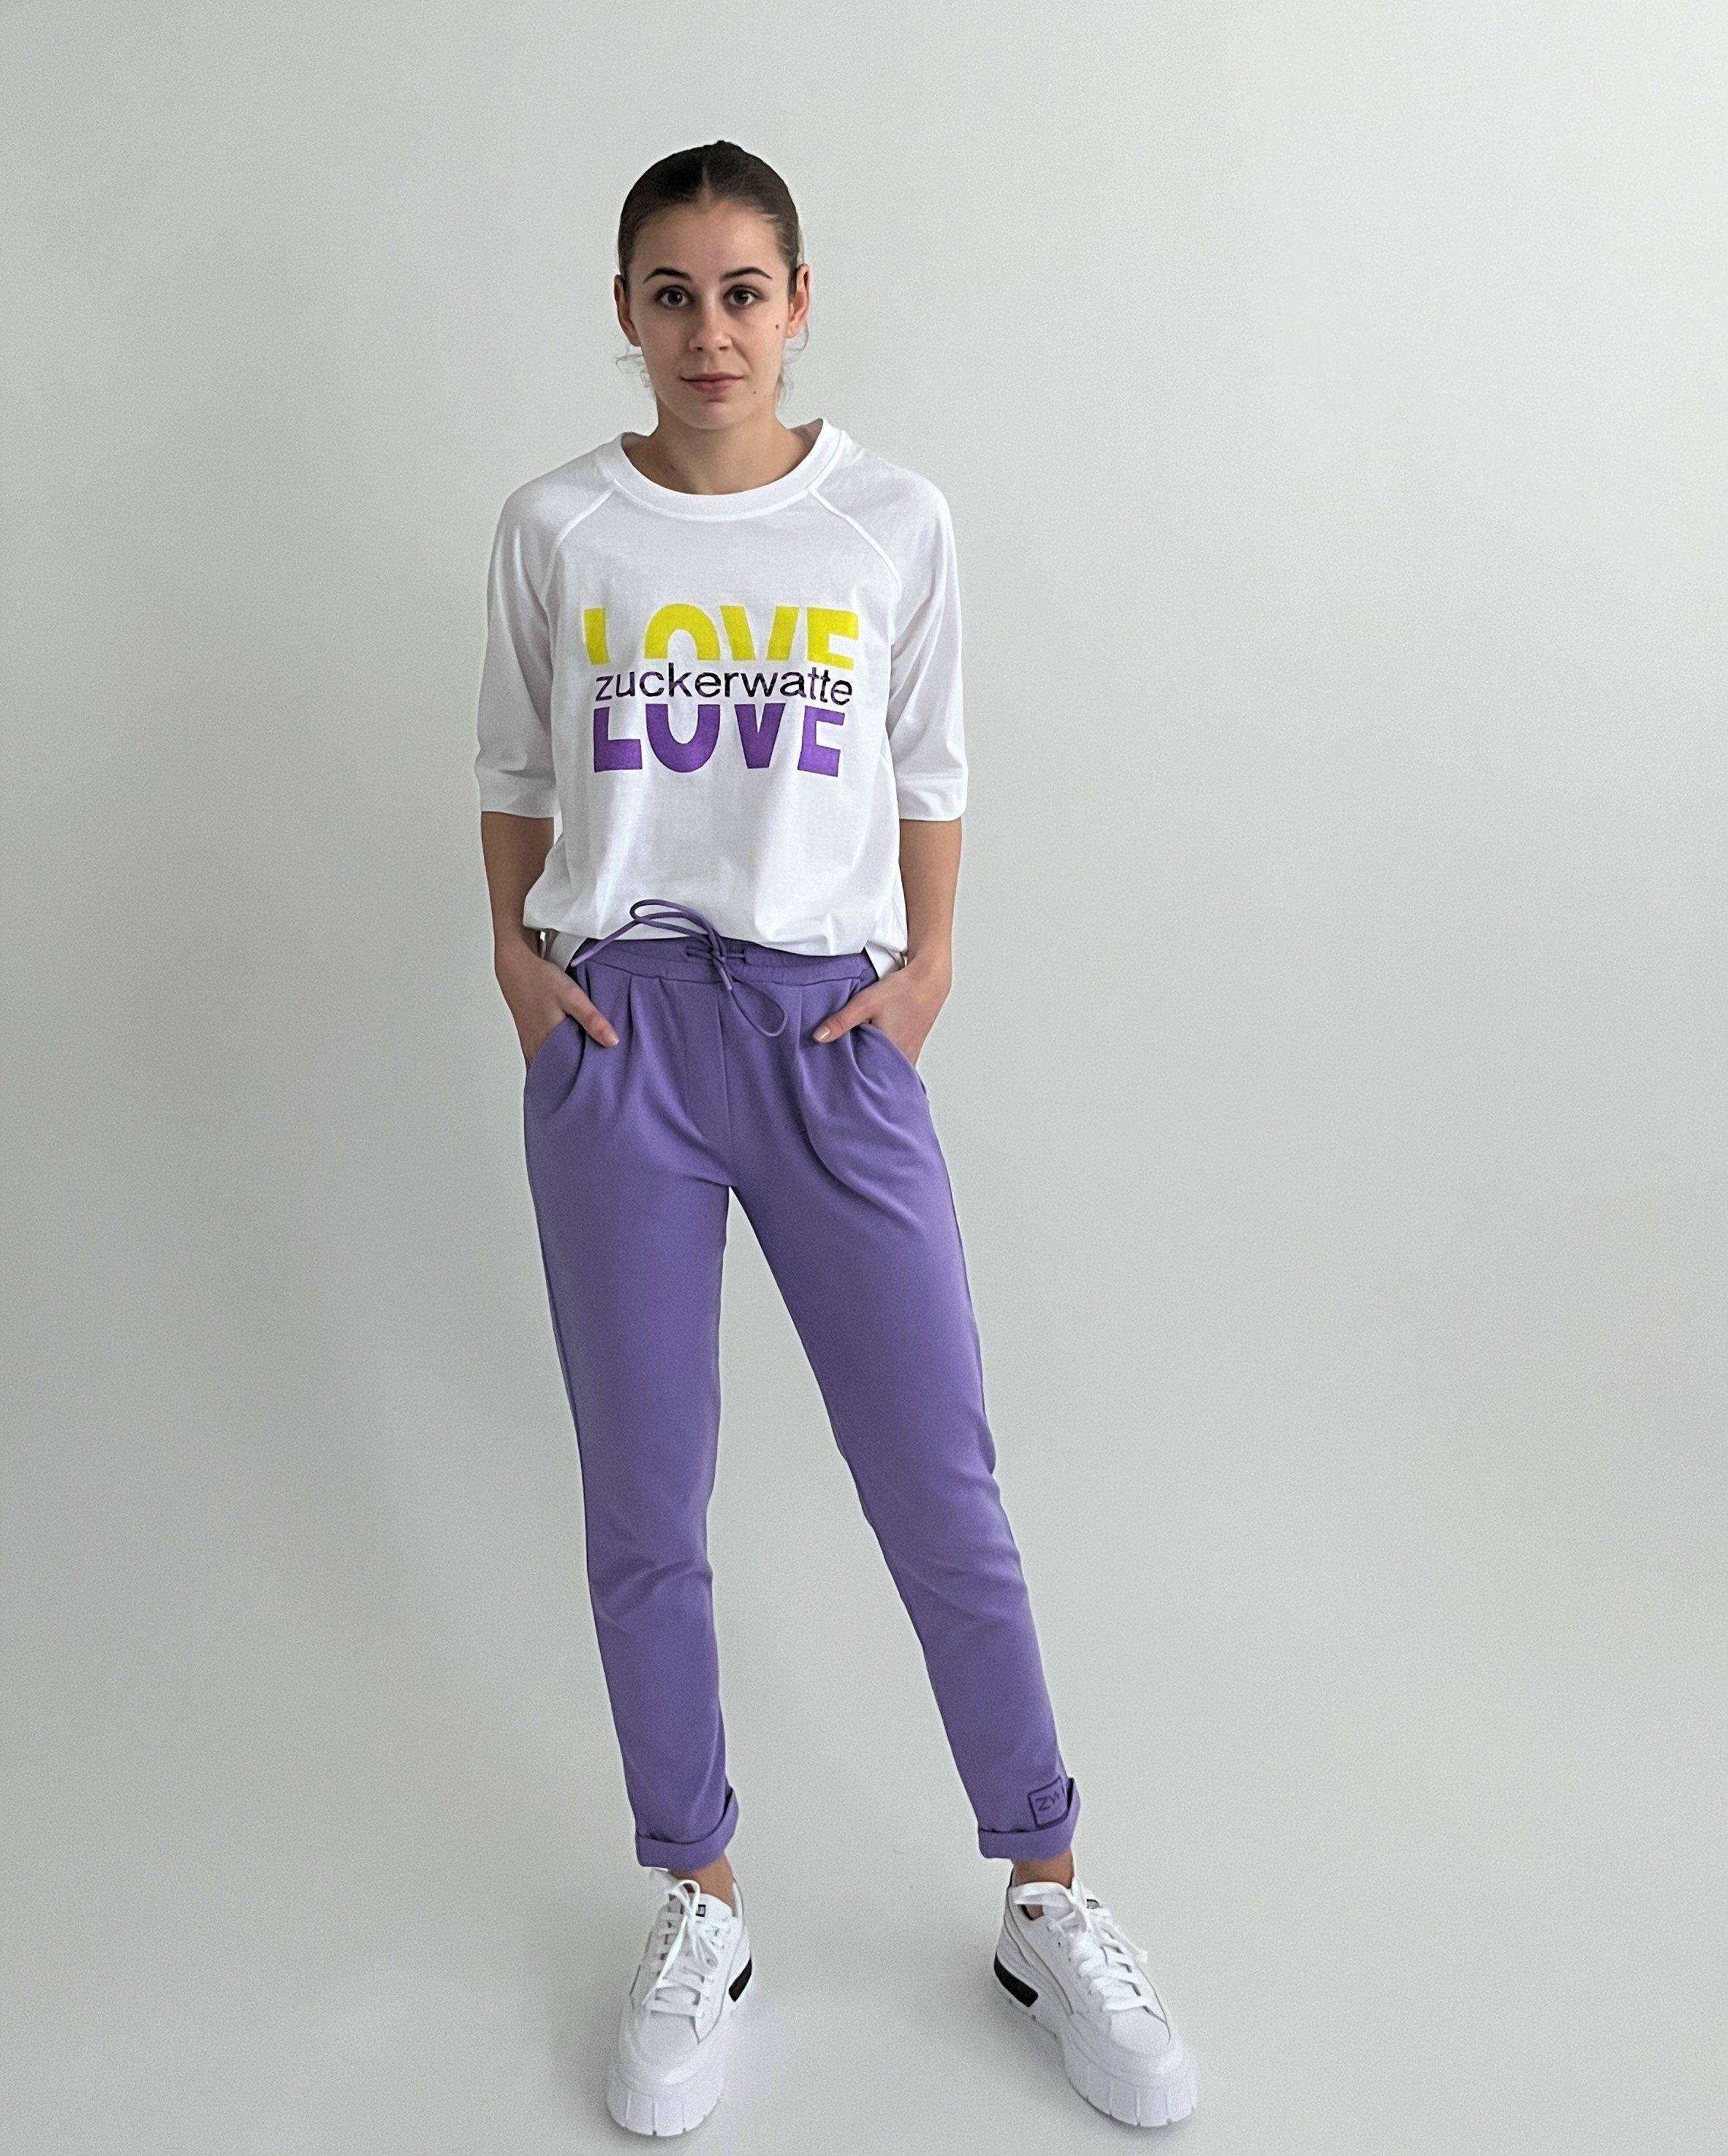 Zuckerwatte Print-Shirt Boyfriendshirt mit "LOVE" 100% Baumwolle Print aus